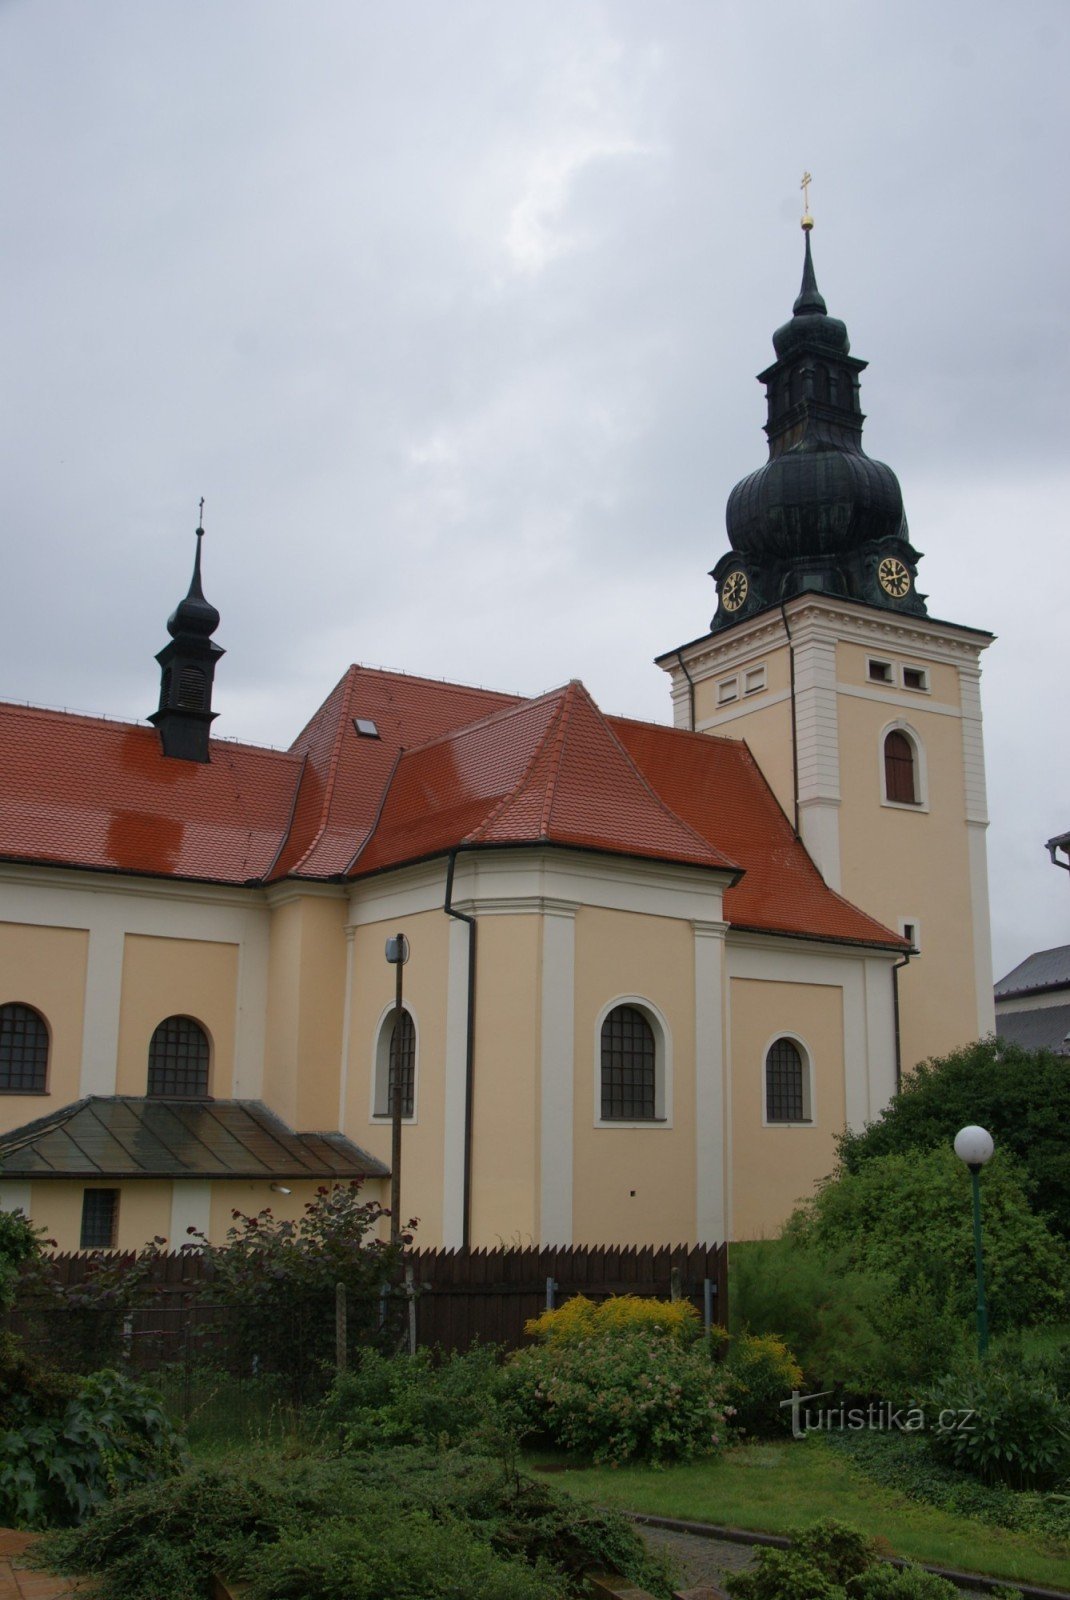 Kunštát - Biserica Sf. Stanislava